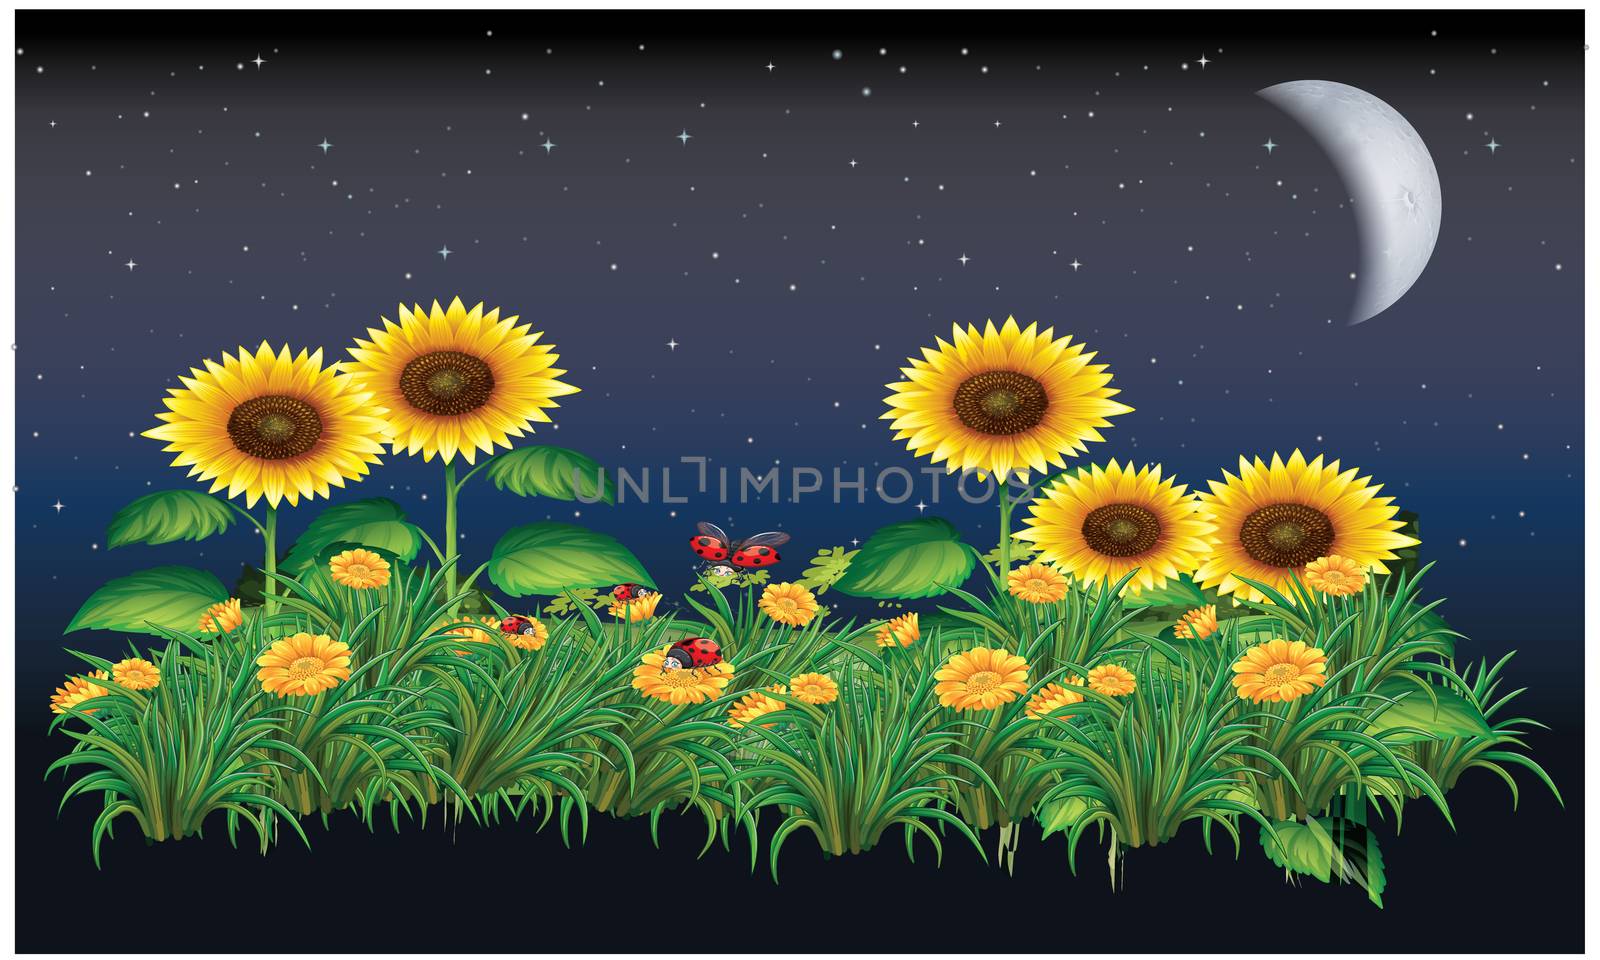 sunflower in night, moon light in a garden by aanavcreationsplus